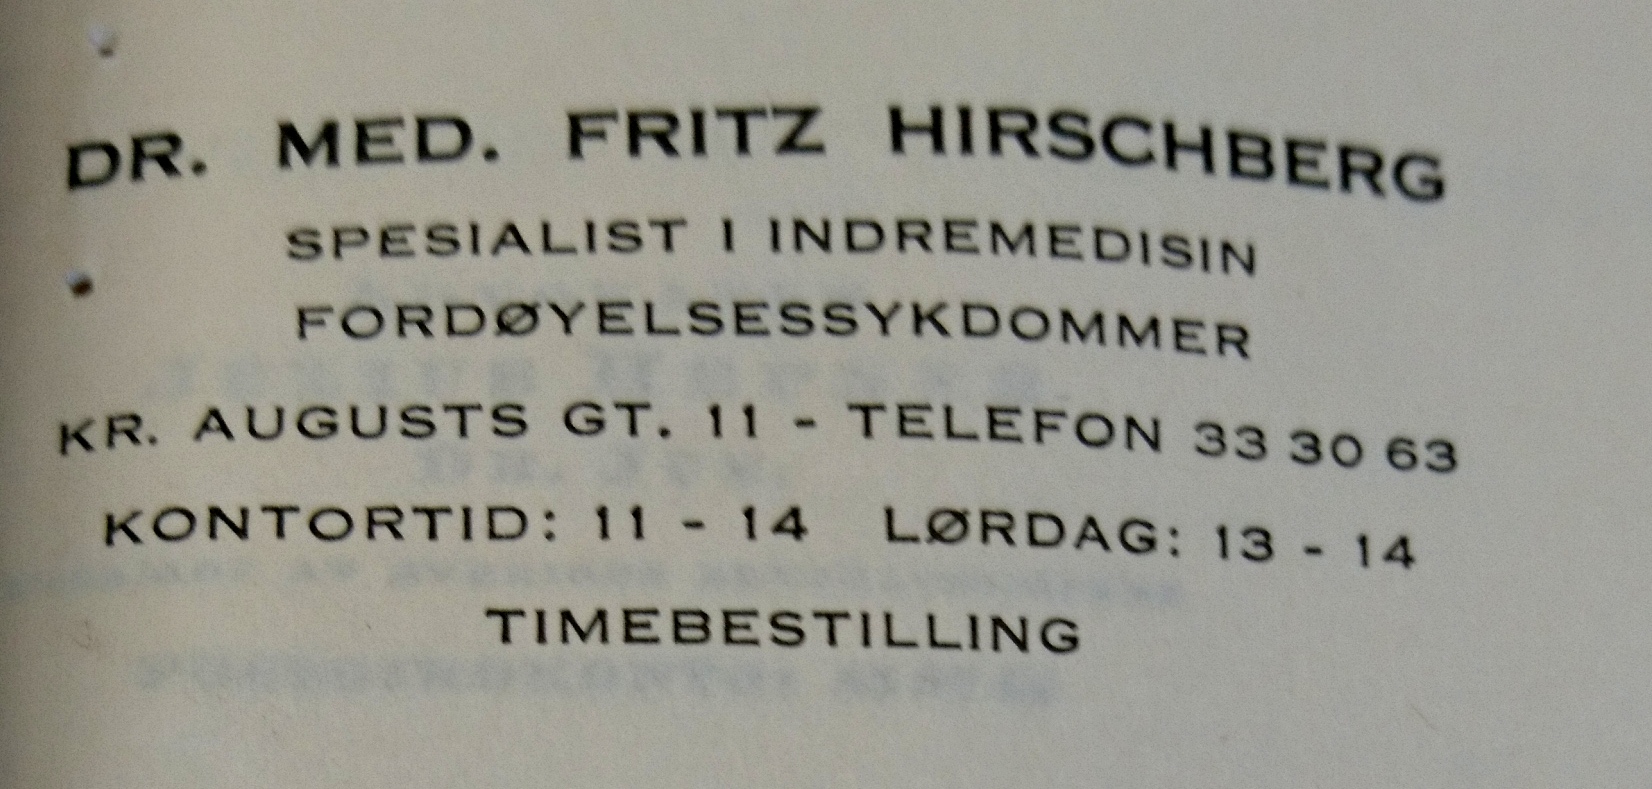 Hirschbergs Praxisanschrift in Oslo in den 1950er Jahren, Quelle: Entschädigungsbehörde Berlin, Entschädigungsakte 